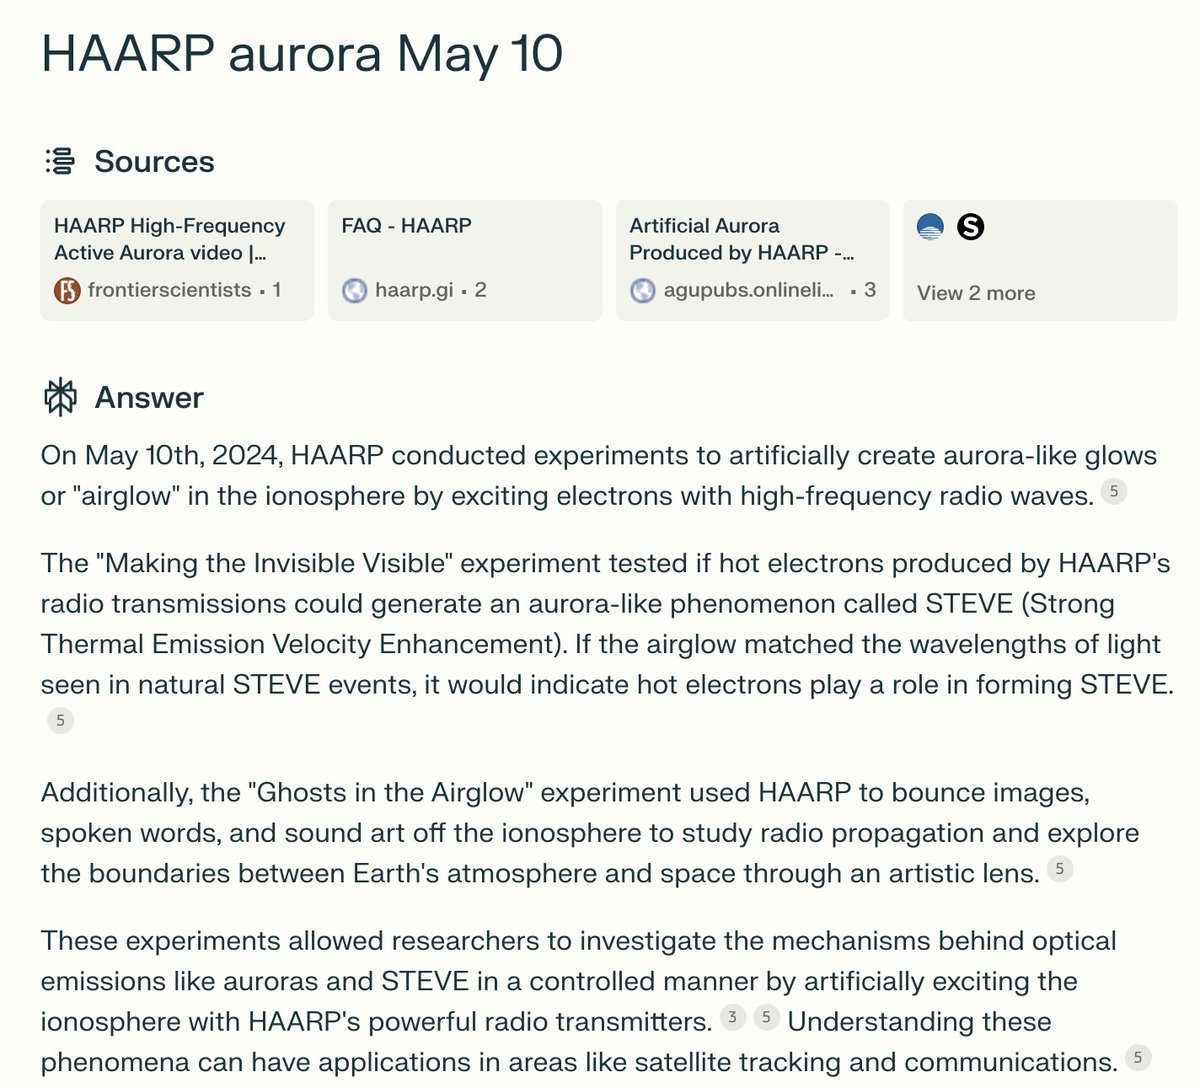 Beklendiği gibi, dünya çapındaki bu 'Aurora Borealis' HAARP'ın elektromanyetik art denemelerinin etkileriydi. 
Deneye tabi tutulduk.